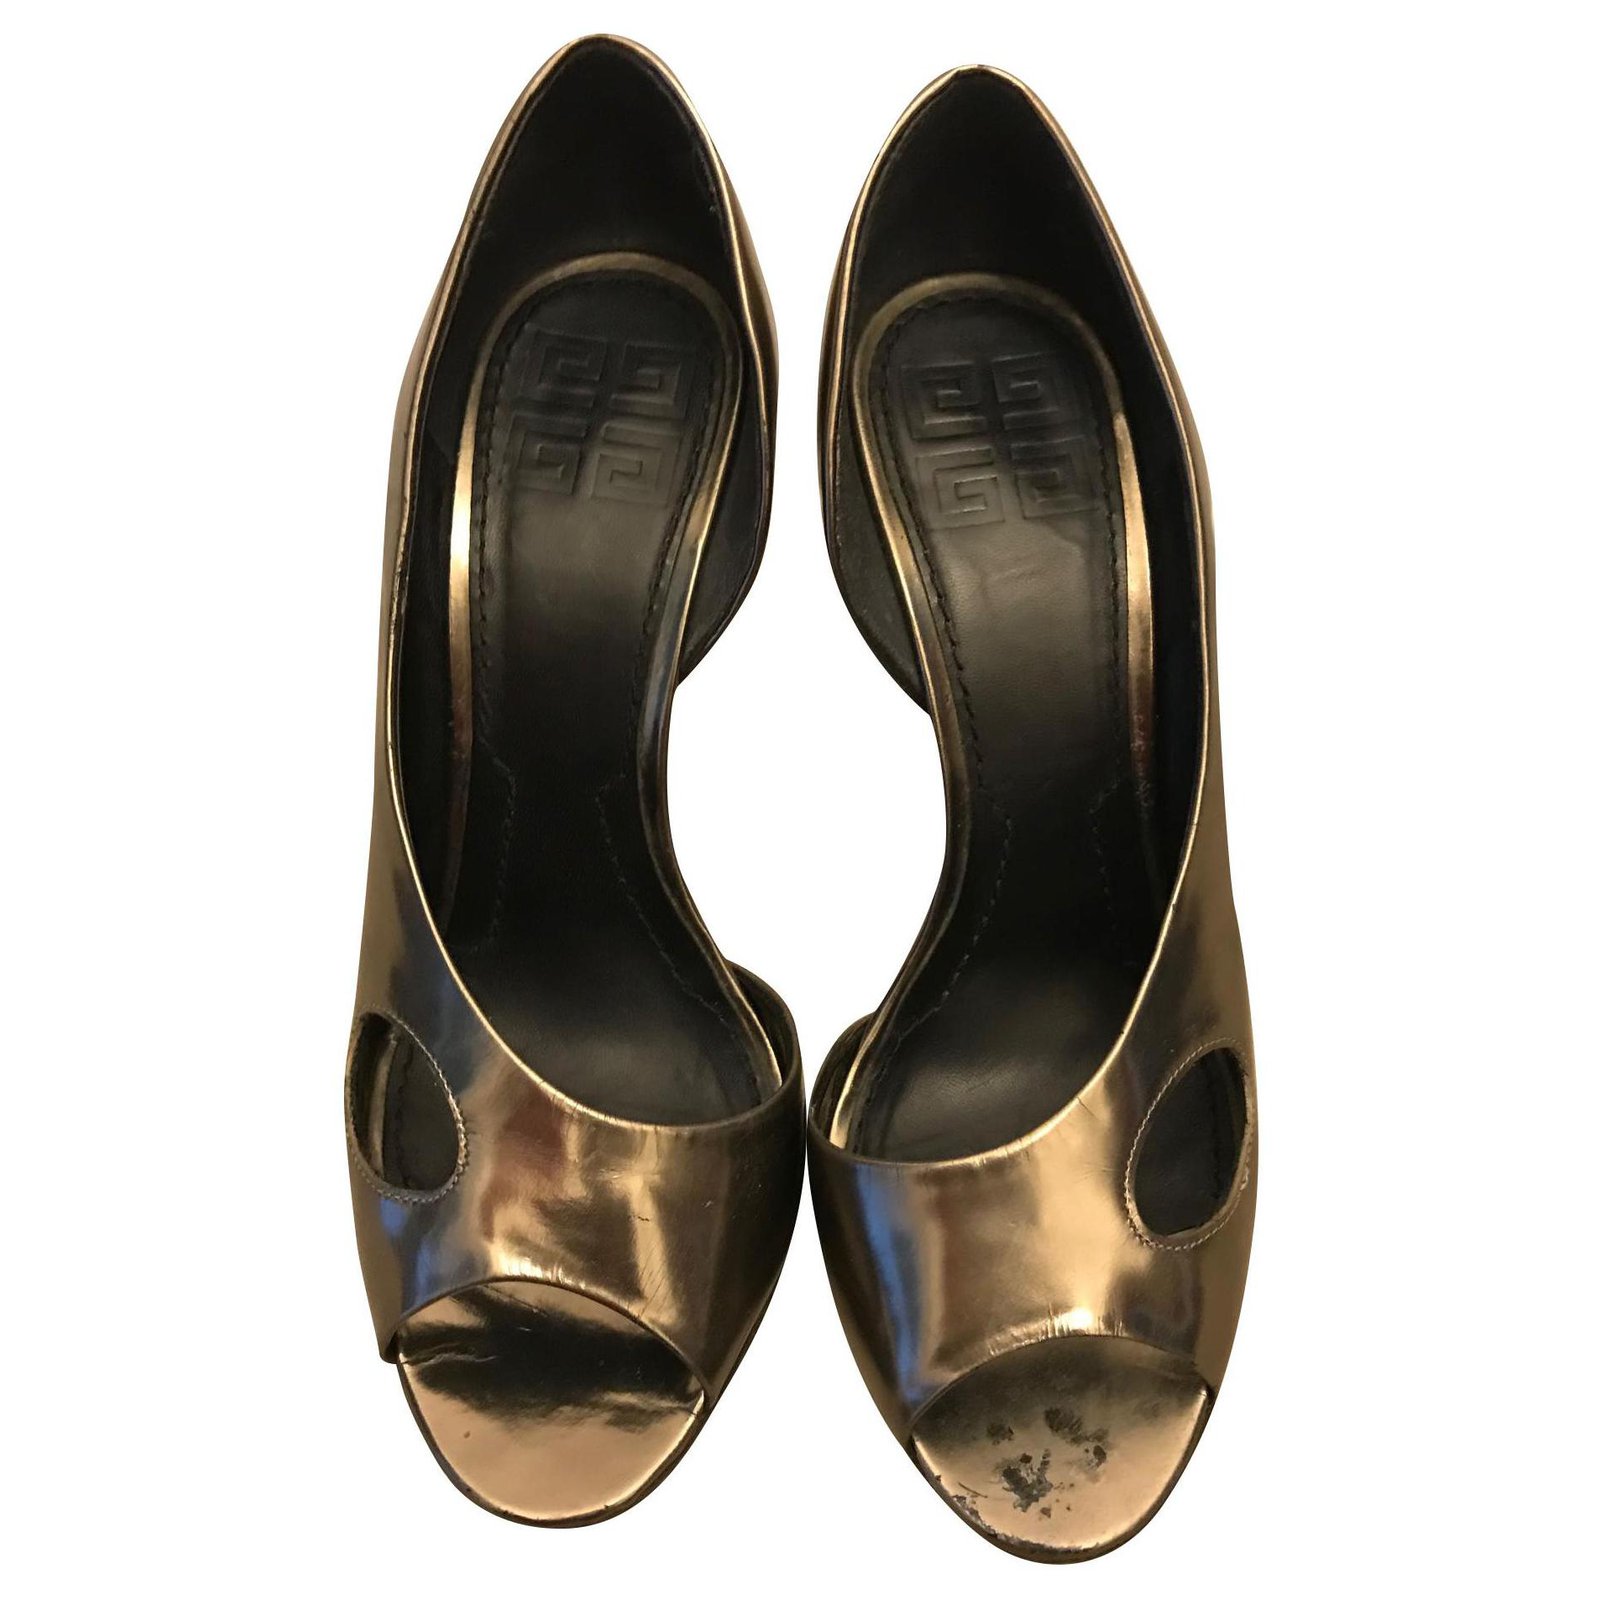 bronze open toe heels